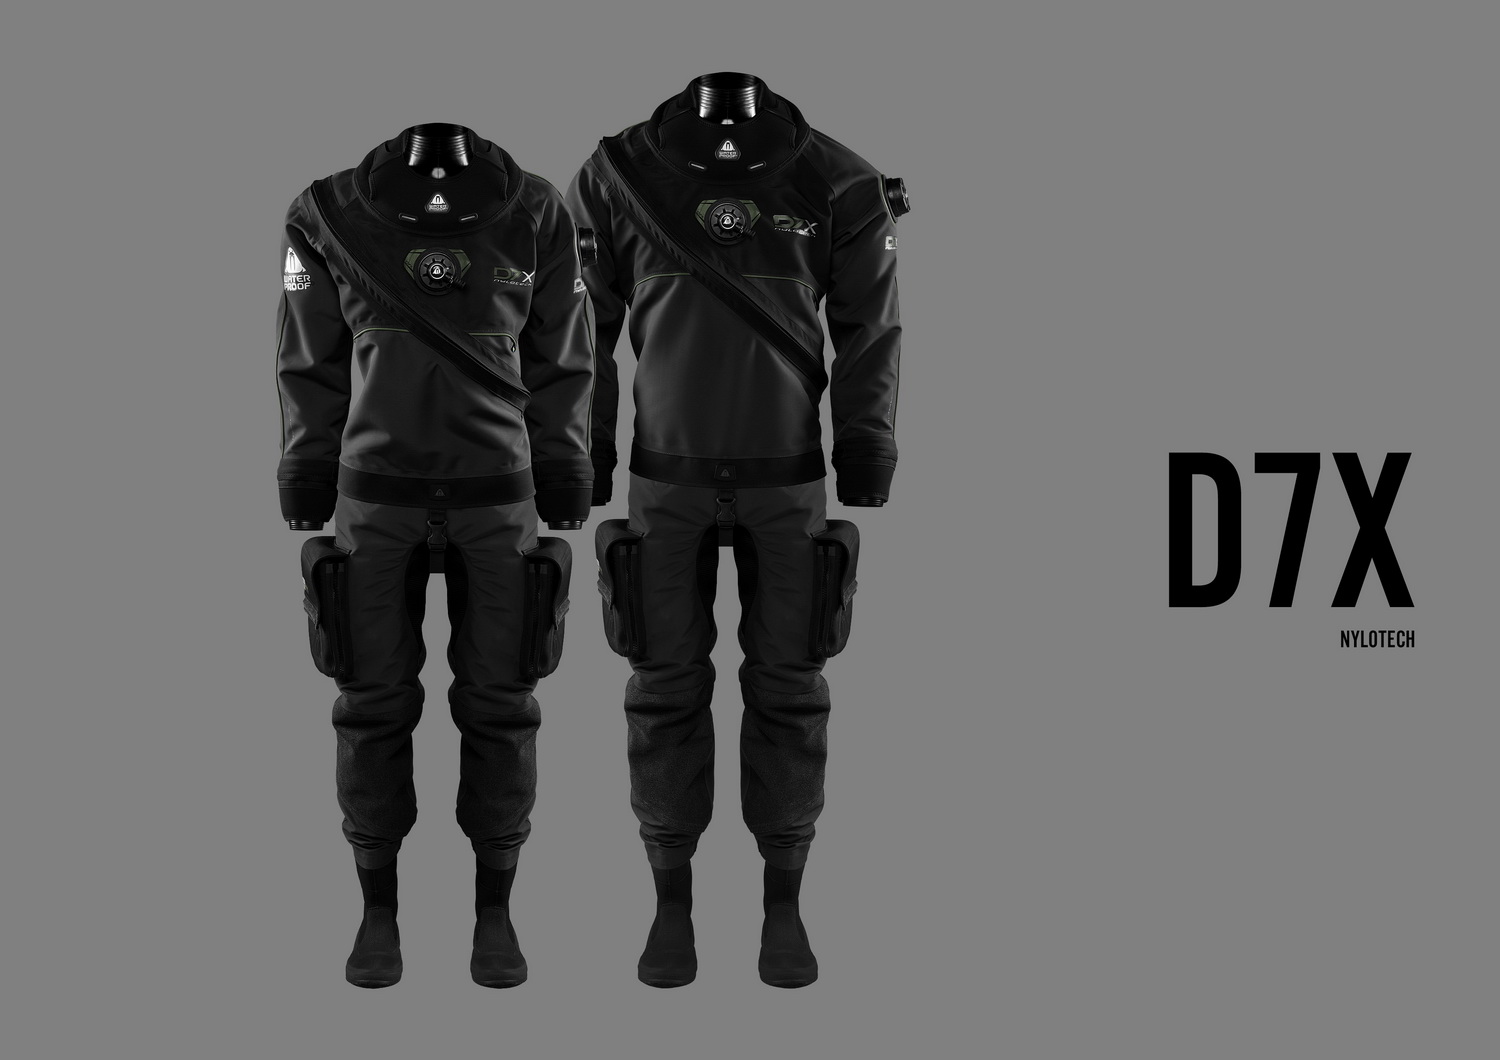 D7X Nylotech suchý oblek dámsky 